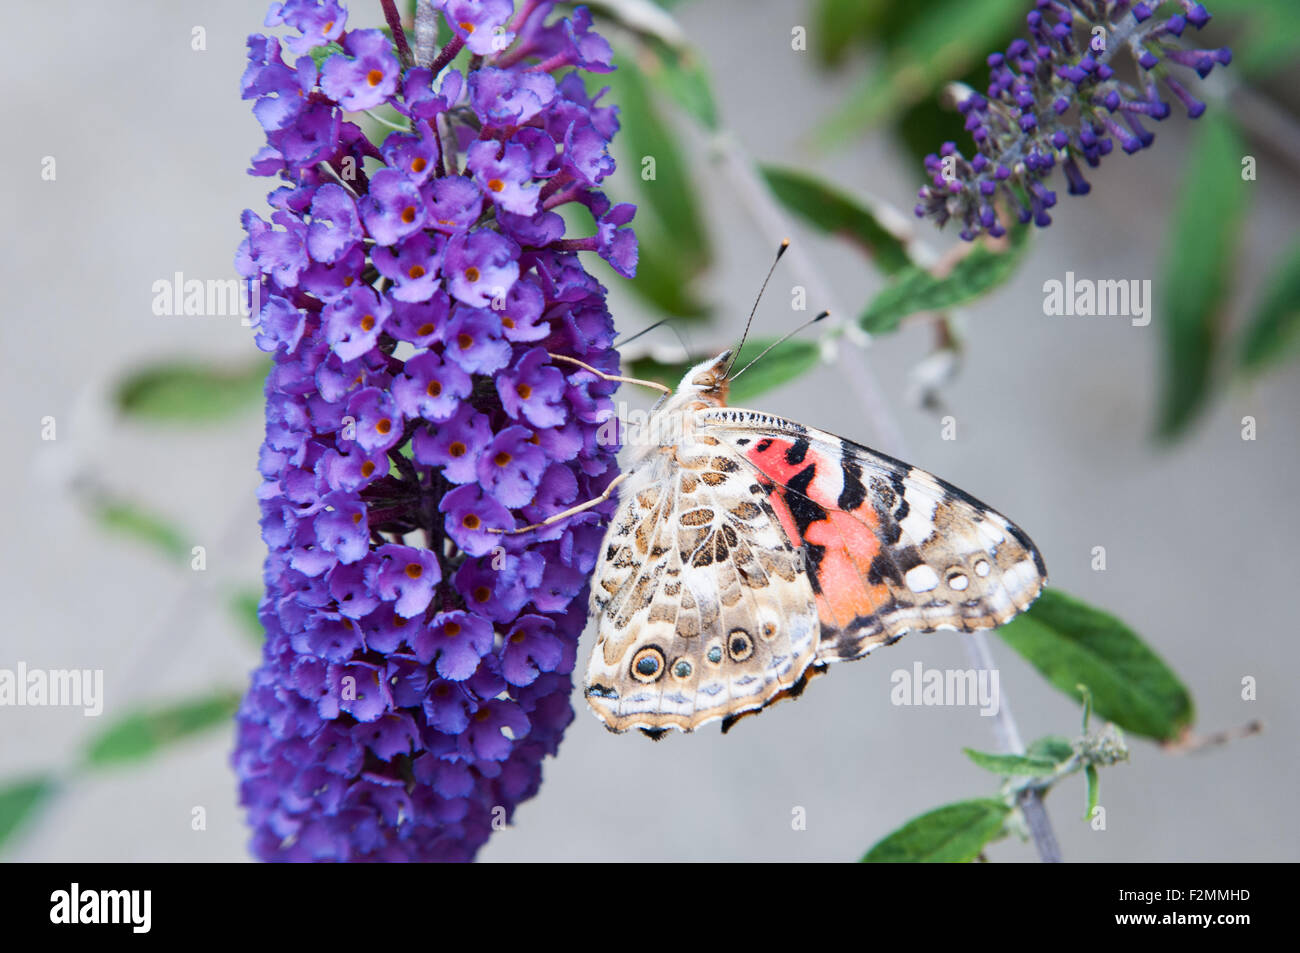 american lady butterfly on a purple butterfly bush flower Stock Photo